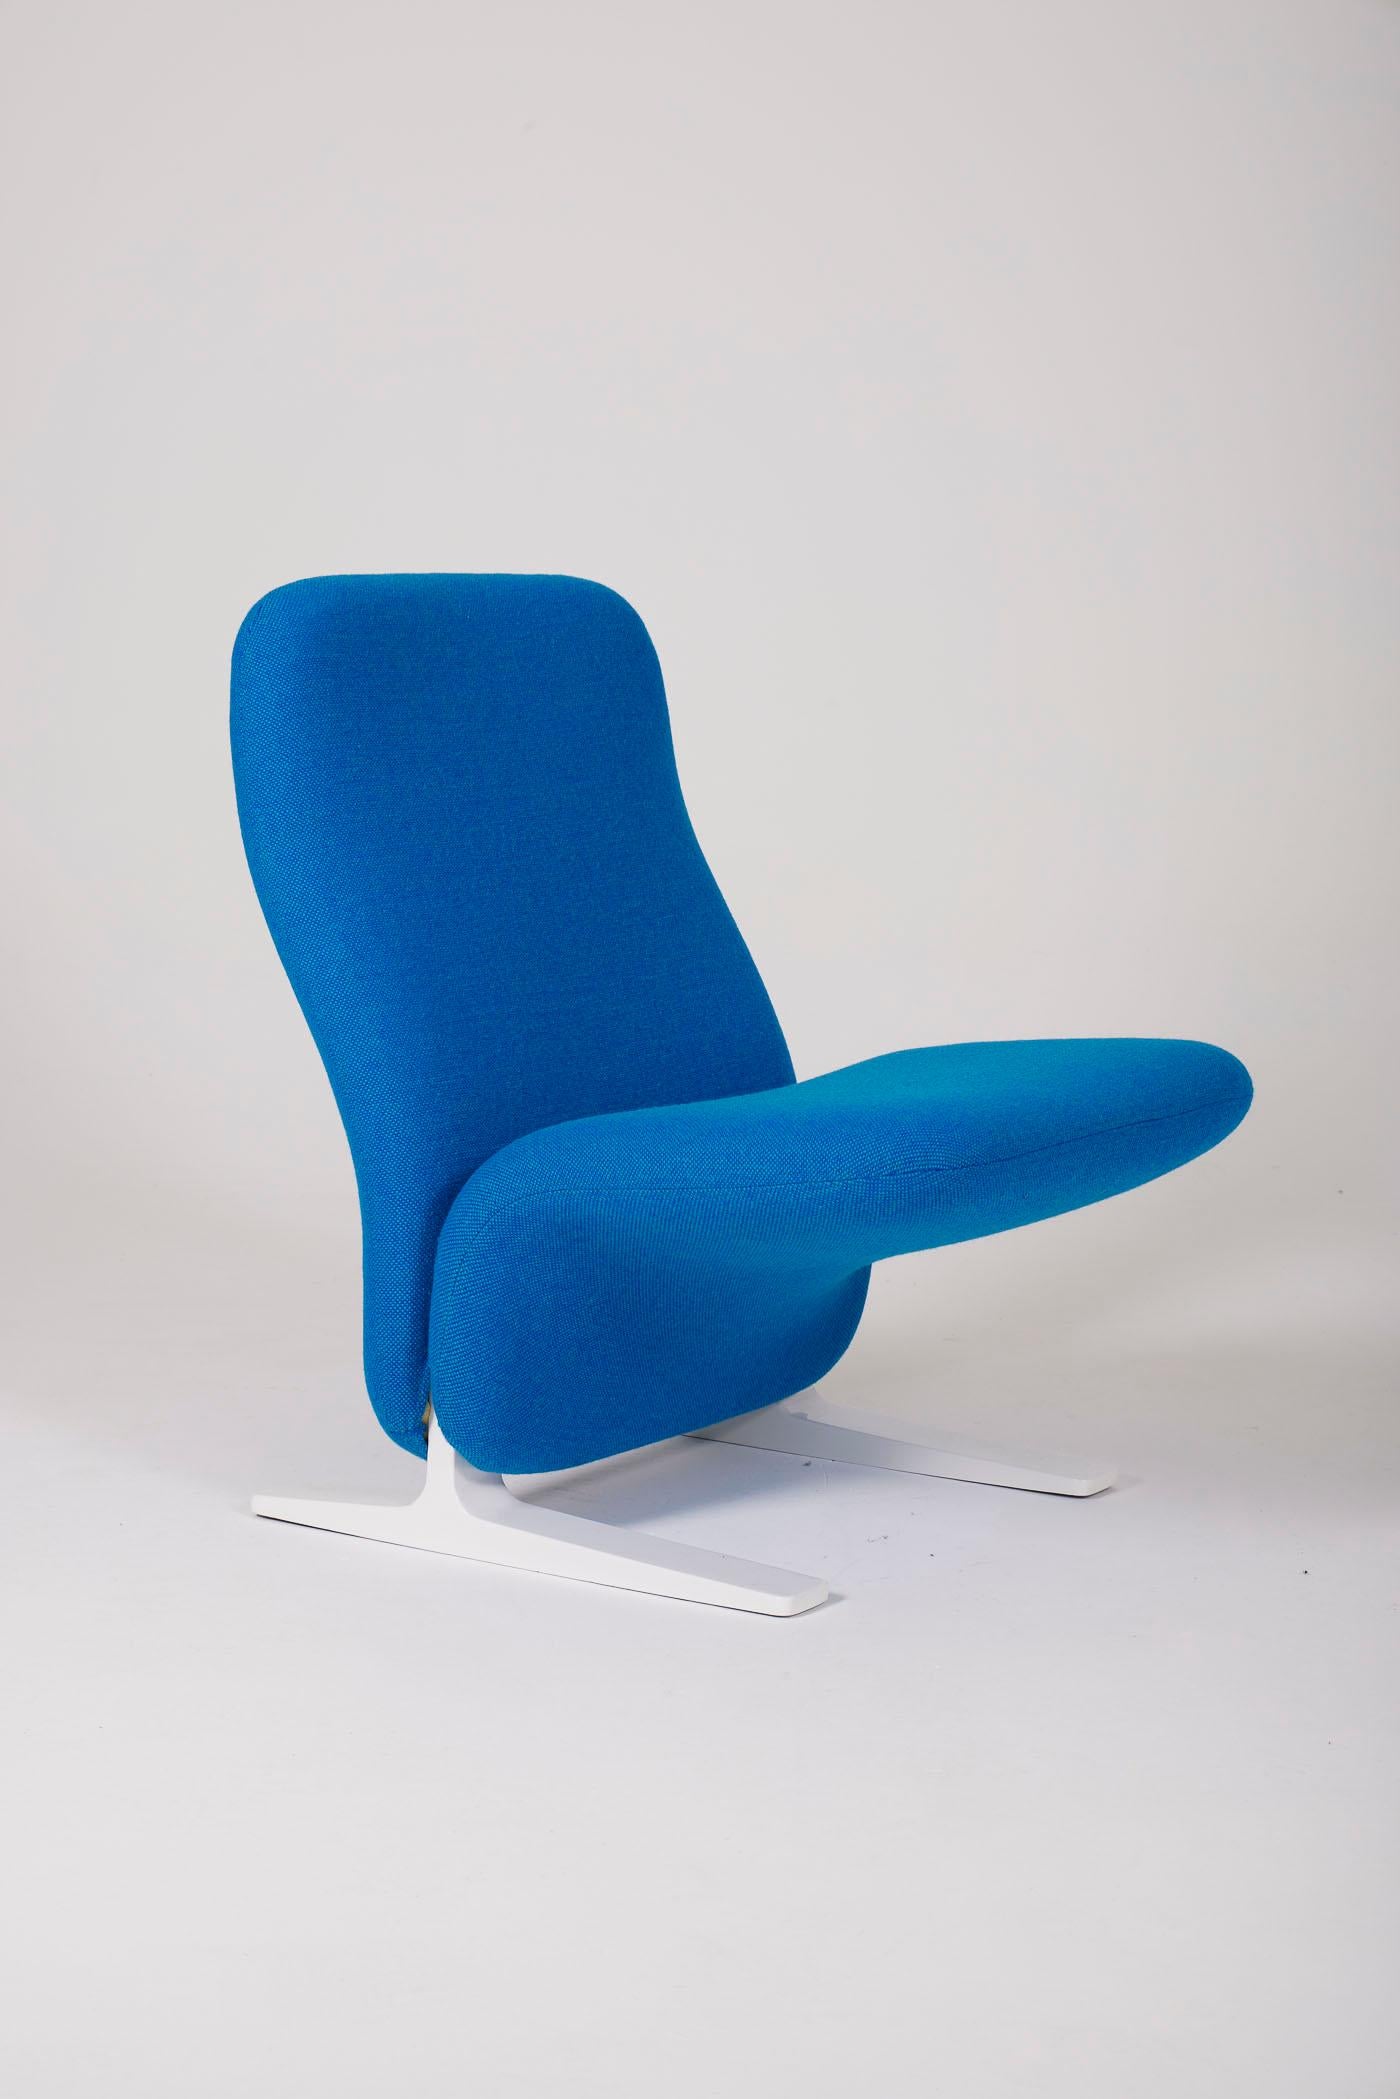 Pierre Paulin F780 armchair For Sale 4